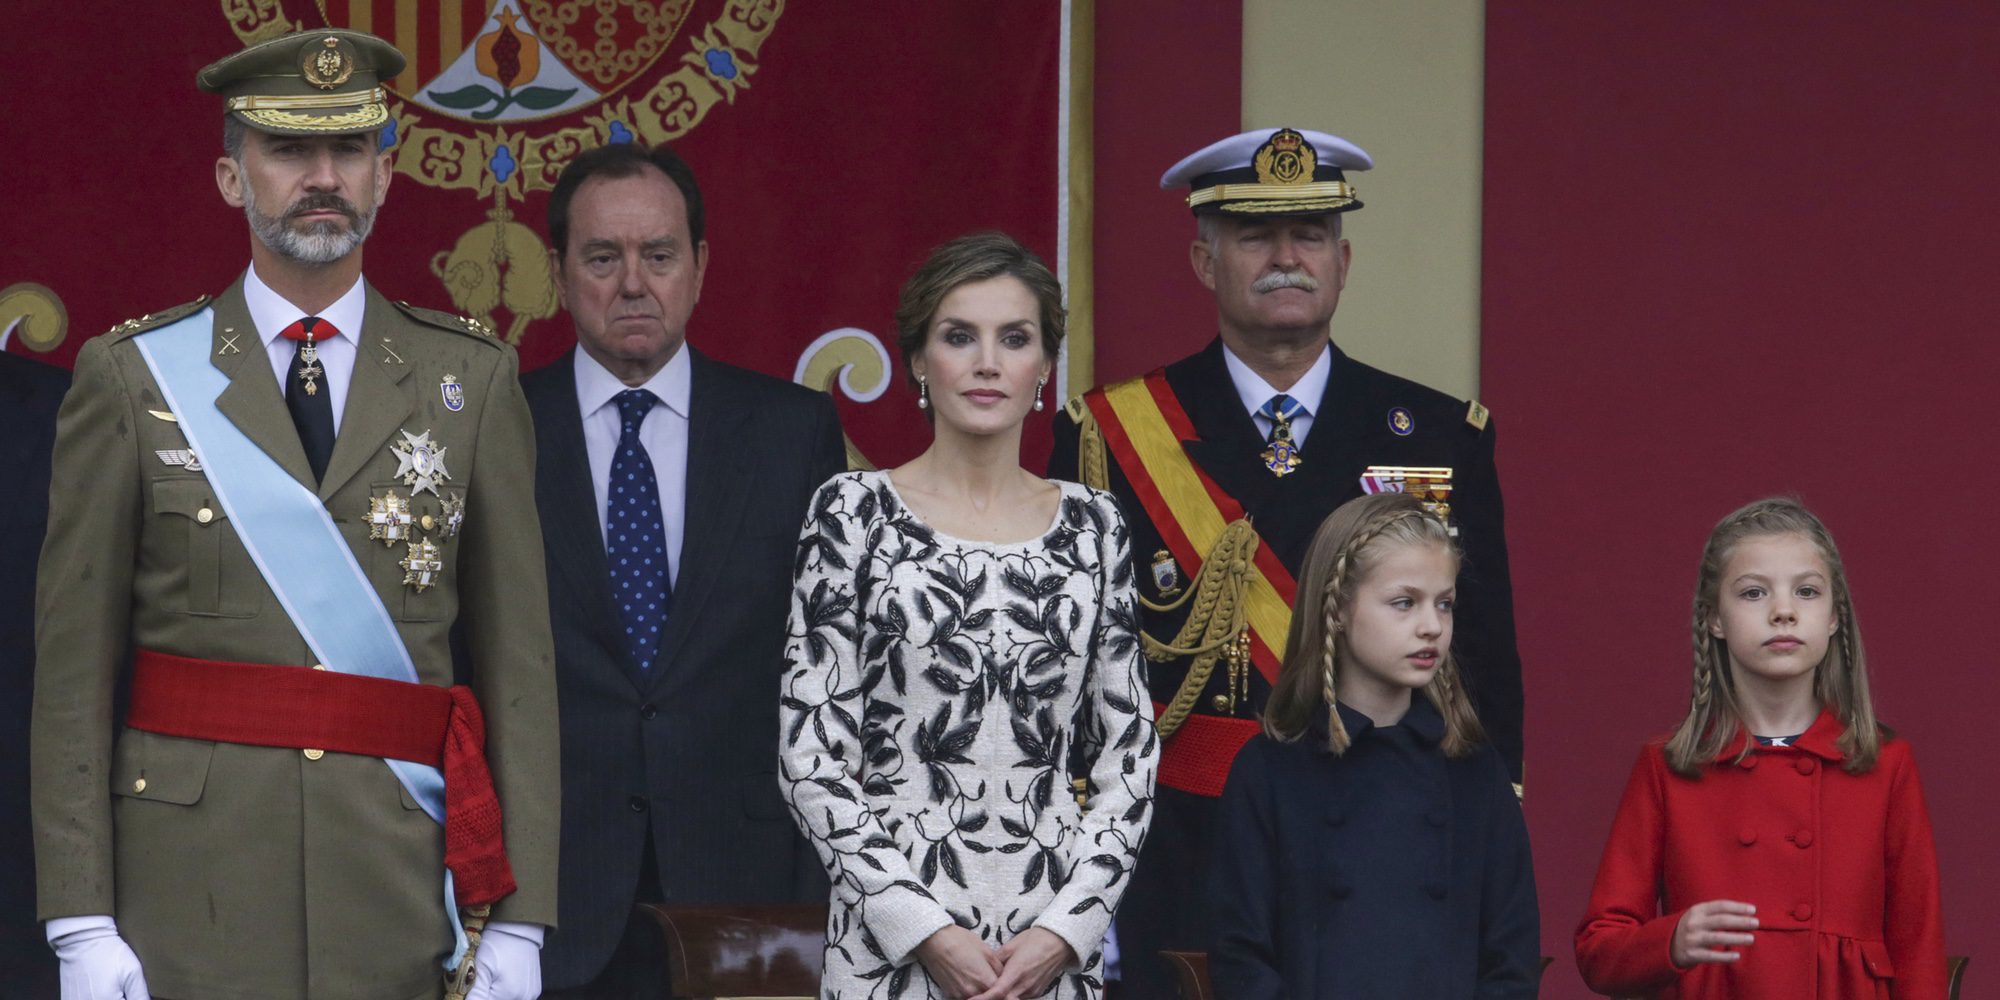 Los Reyes Felipe y Letizia, la Princesa Leonor y la Infanta Sofía, fans de 'Star Wars'